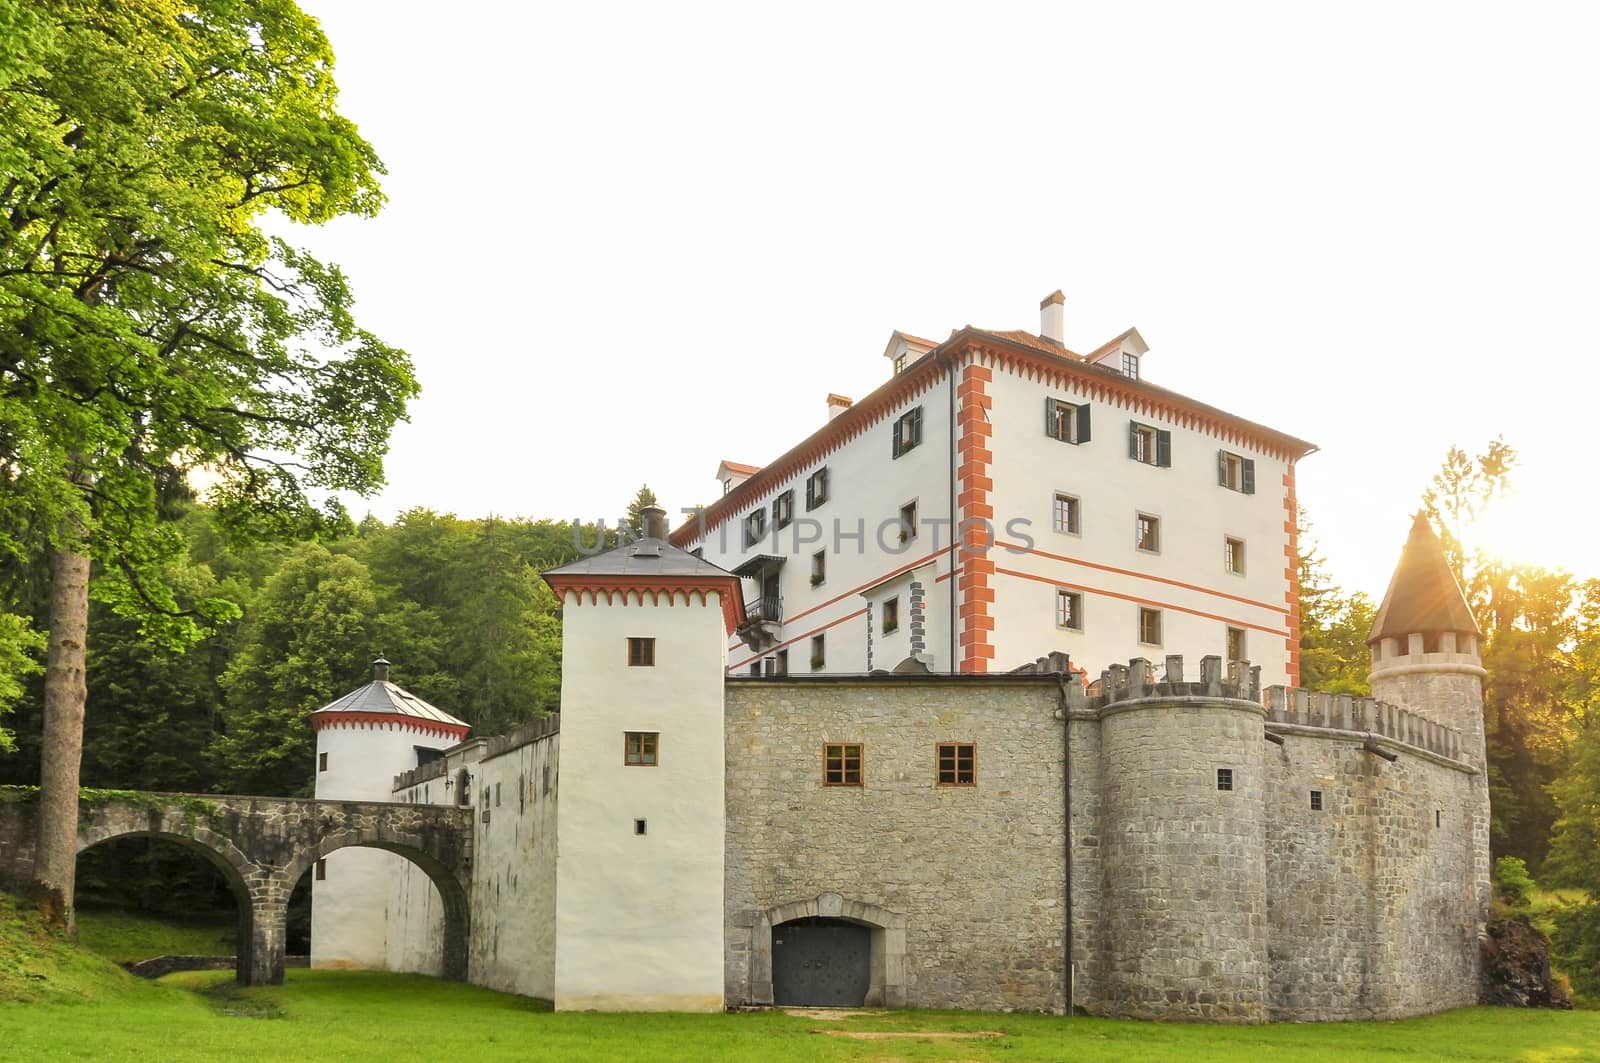 Sneznik Castle, a picturesque 13th-century castle located in Loska Dolina, Slovenia